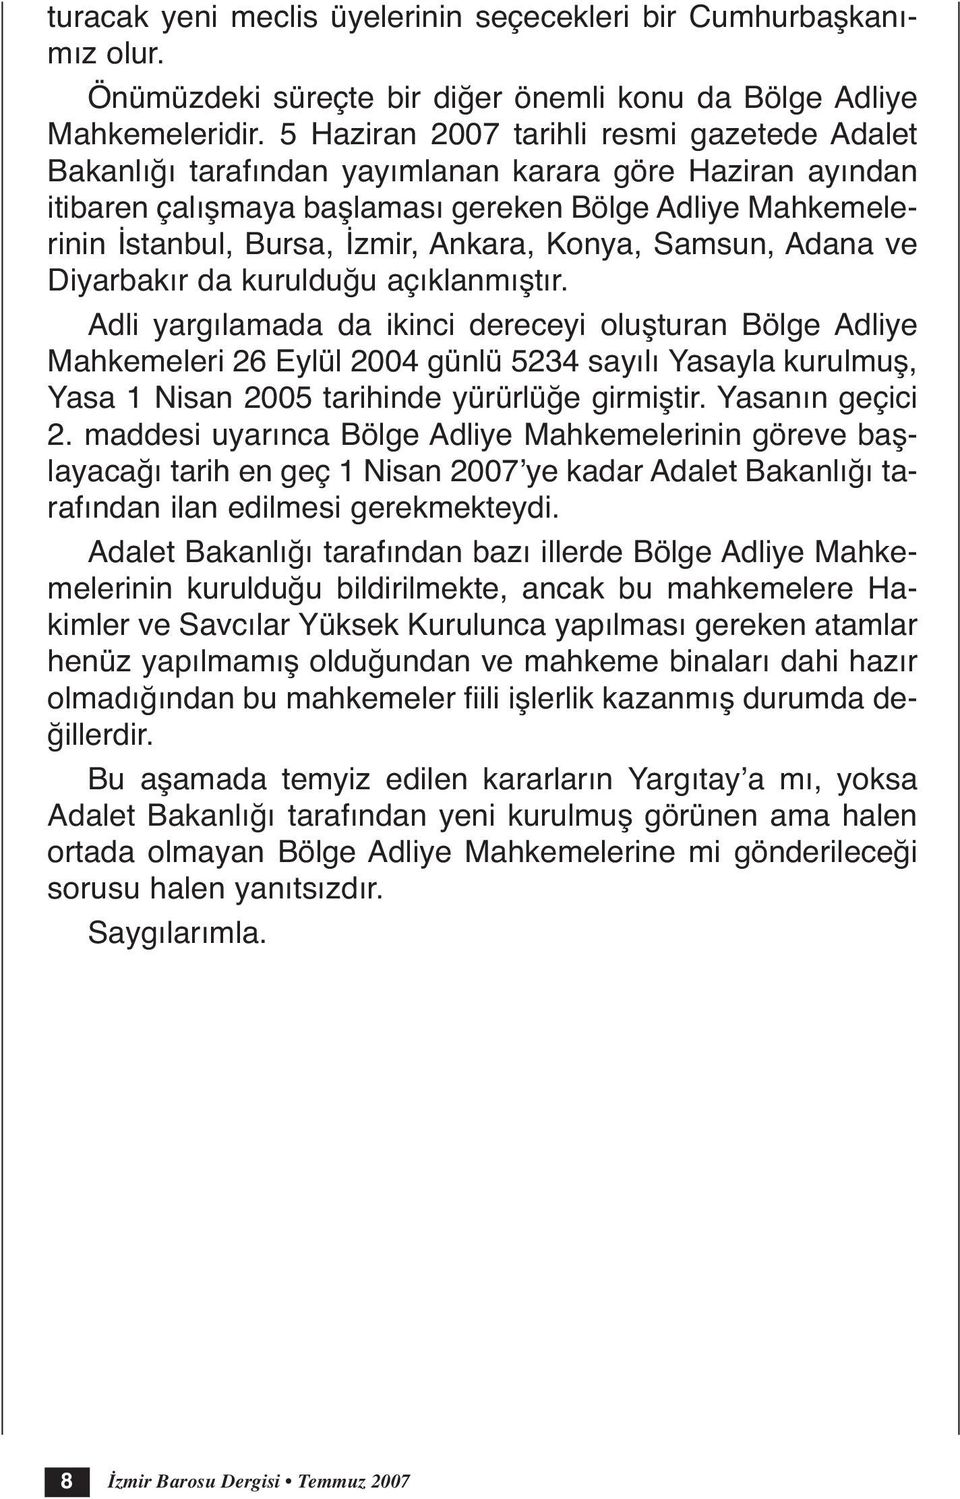 Ankara, Konya, Samsun, Adana ve Diyarbakır da kurulduğu açıklanmıştır.